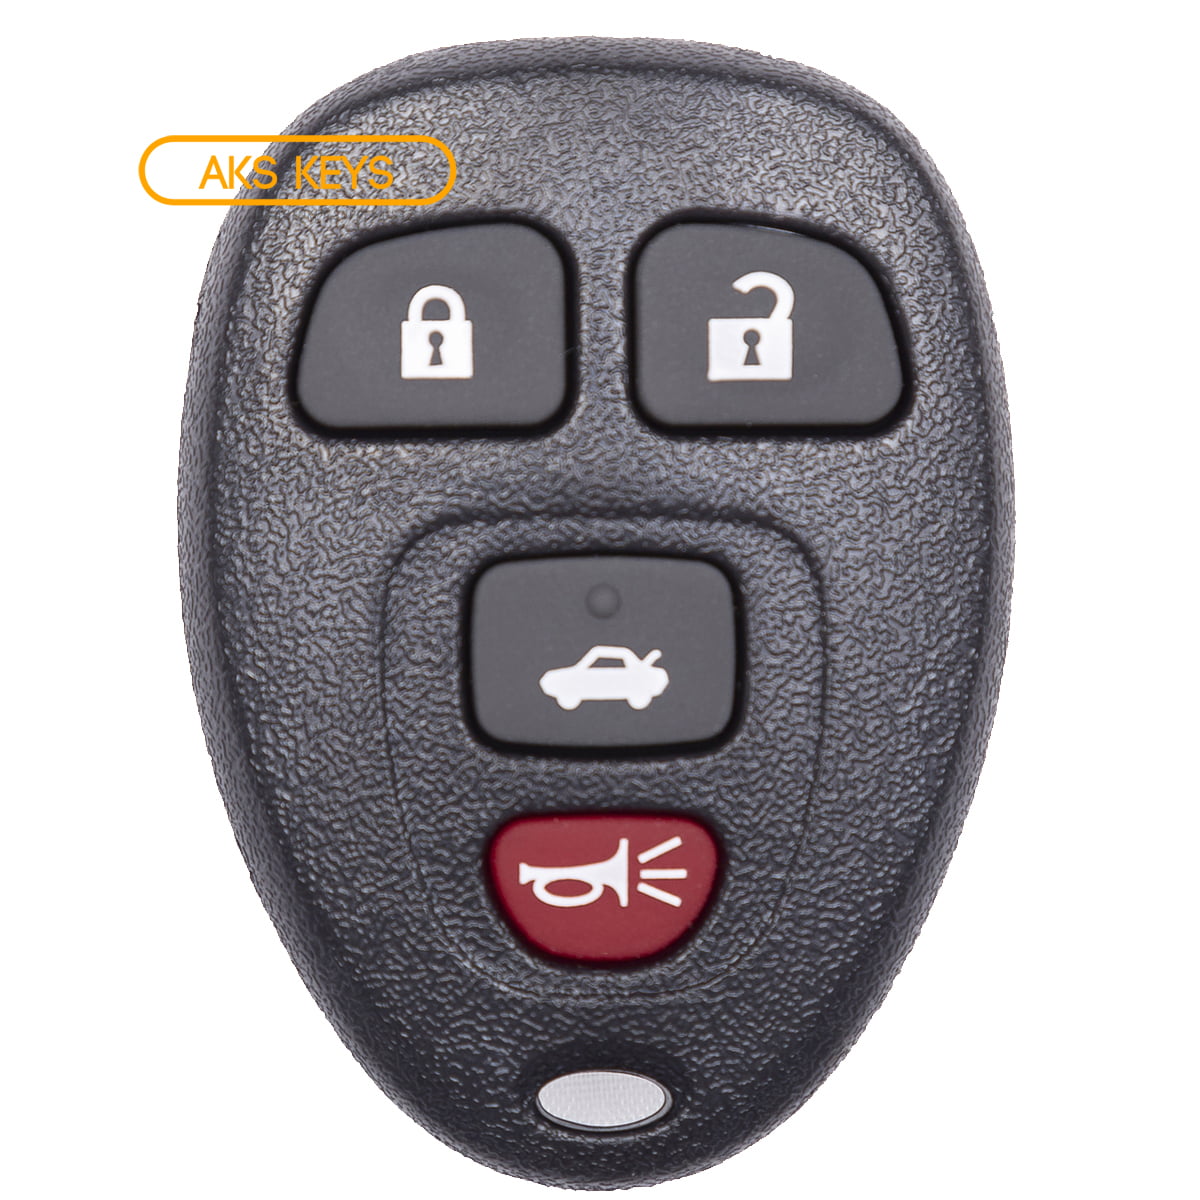 2x For 2006 2007 2008 2009 2010 2011 Chevrolet HHR Keyless Entry Remote Key Fob 